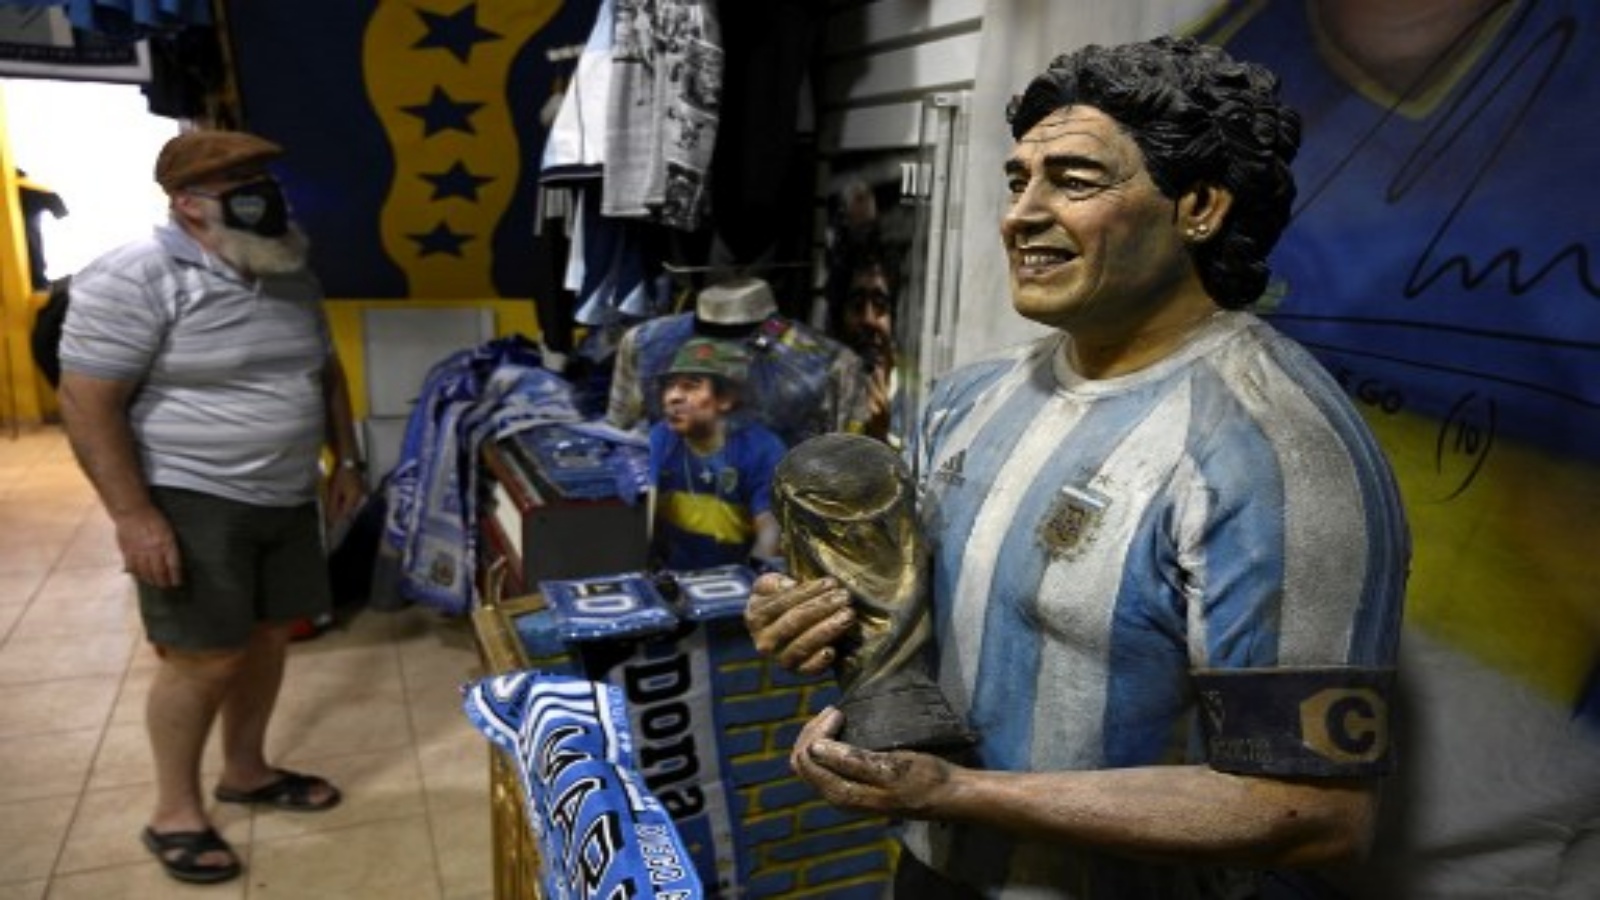  دمية تصور أسطورة كرة القدم الأرجنتينية الراحل دييجو مارادونا وهو يحمل كأس العالم FIFA محاطة بالترويج في متجر أمام استاد بوكا جونيورز 